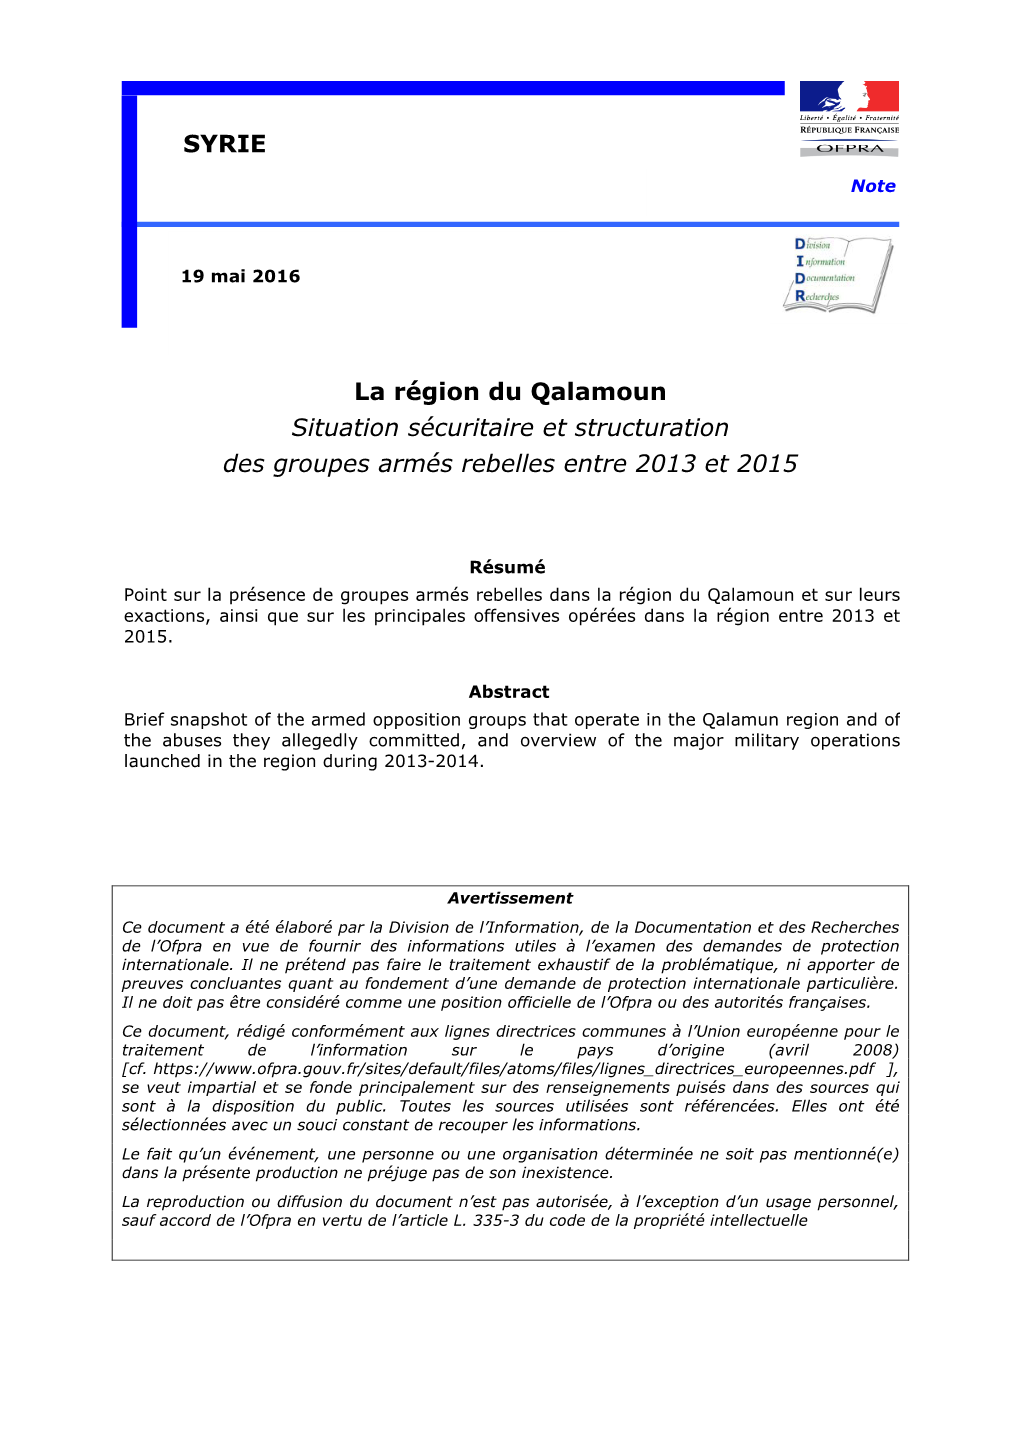 La Région Du Qalamoun Situation Sécuritaire Et Structuration Des Groupes Armés Rebelles Entre 2013 Et 2015